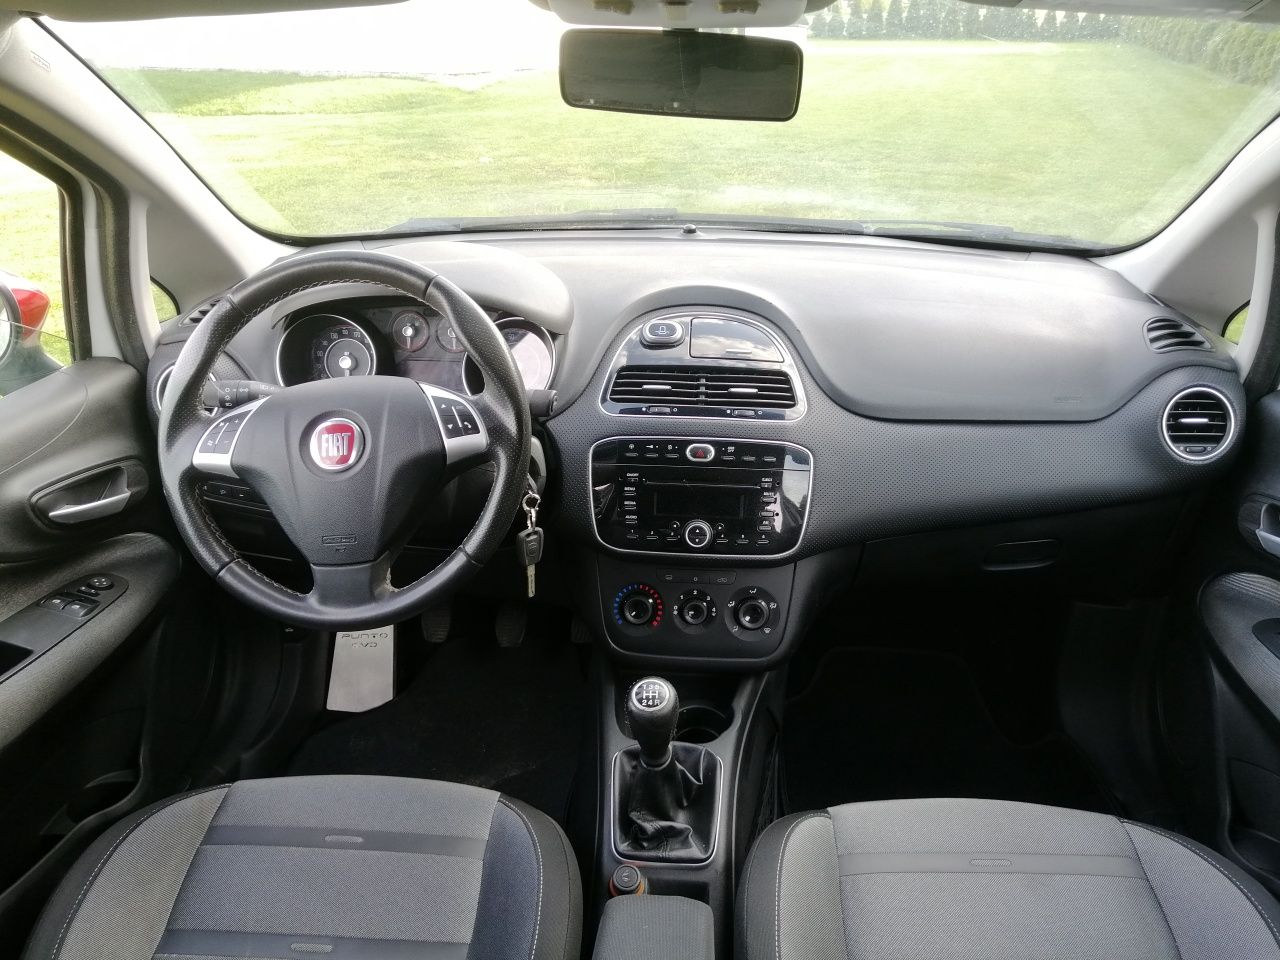 Fiat Punto Evo 1.4 turbo 135 KM 5 drzwi Alufelgi Klimatyzacja